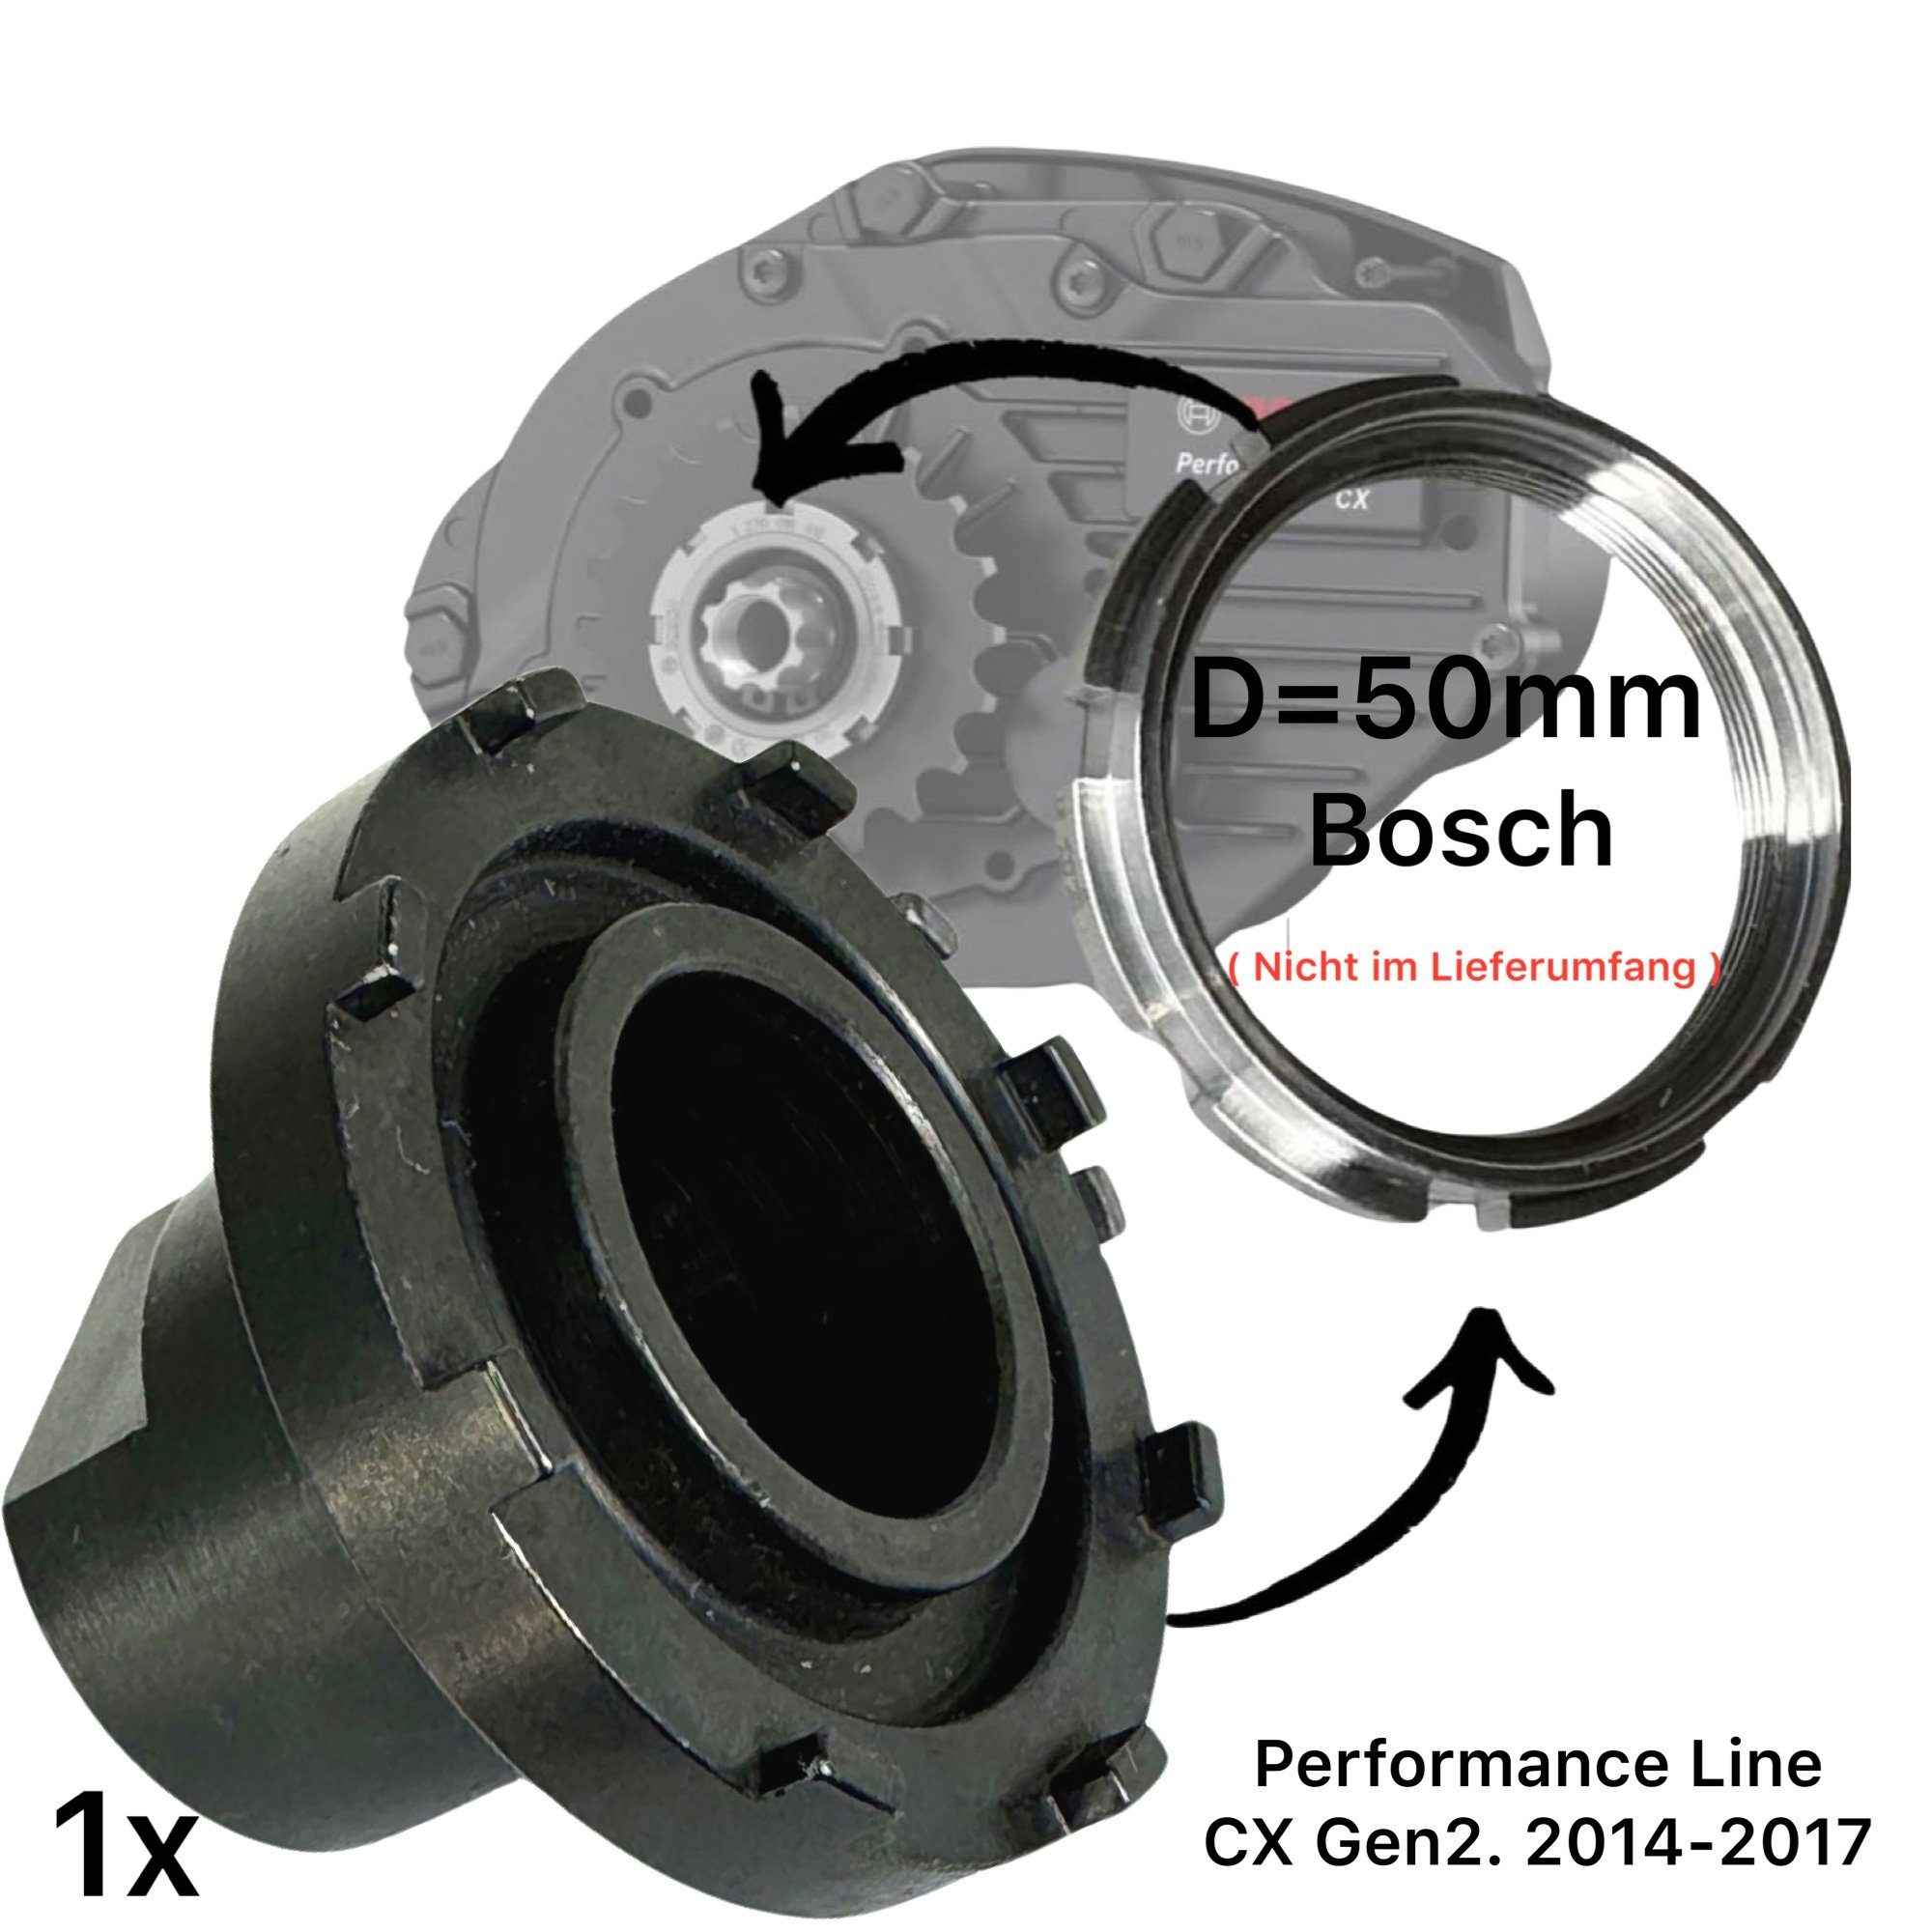 F26 Fahrrad-Montageständer Lockringtool 51mm für Bosch Ebike Kettenblatt Motor Active Performance